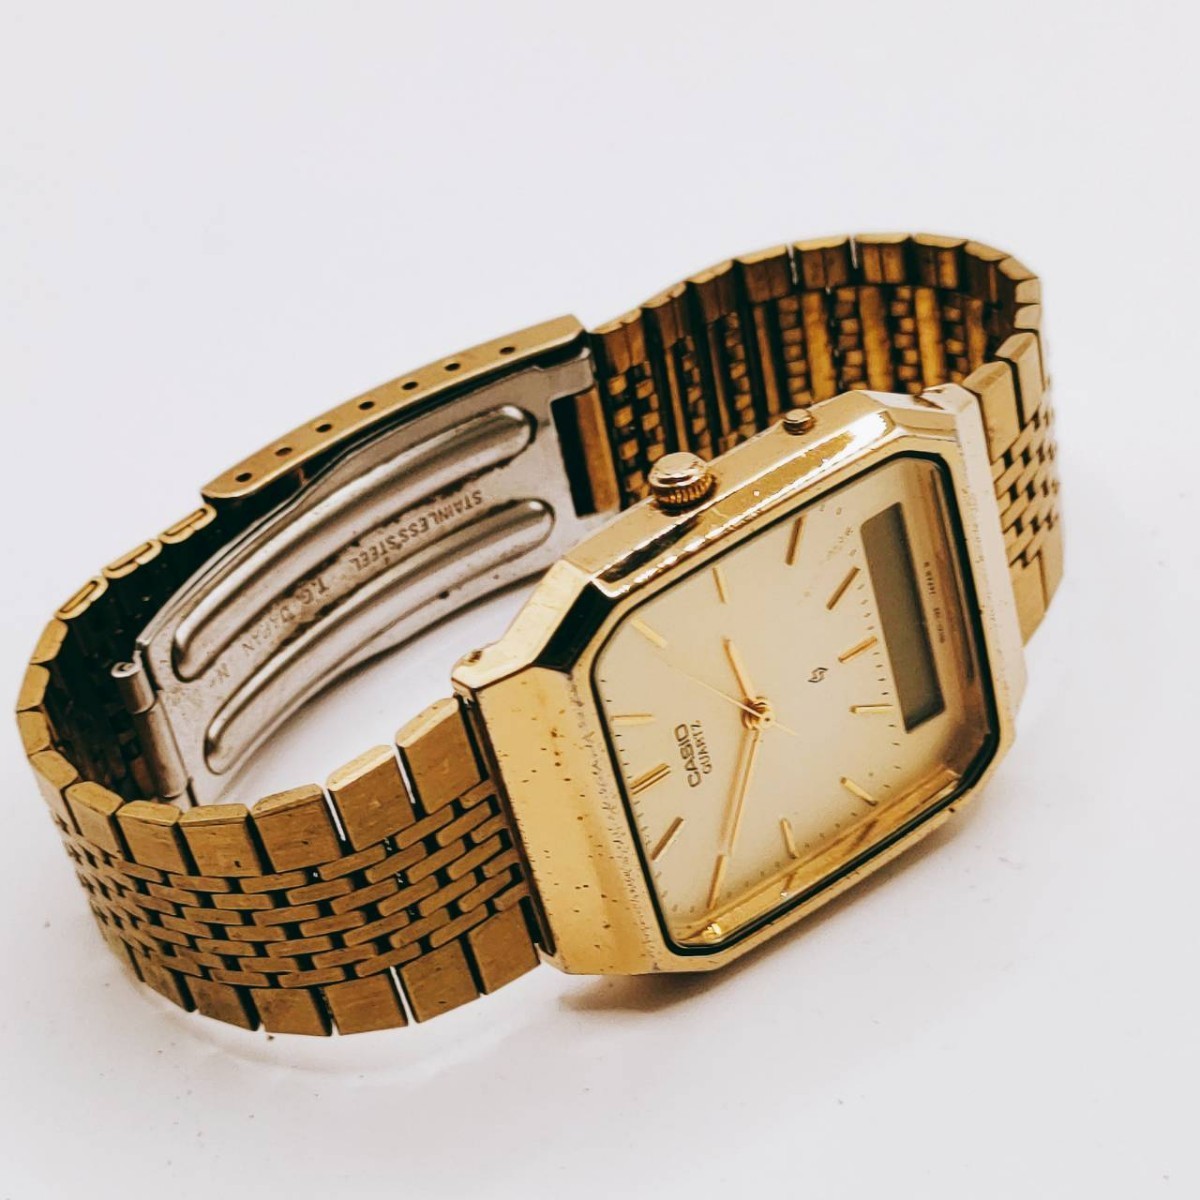 CASIO カシオ AQ-413G 腕時計 アナログ 3針 金色文字盤 ゴールド基調 時計 とけい トケイ アクセサリー ヴィンテージ アンティーク レトロ_画像8